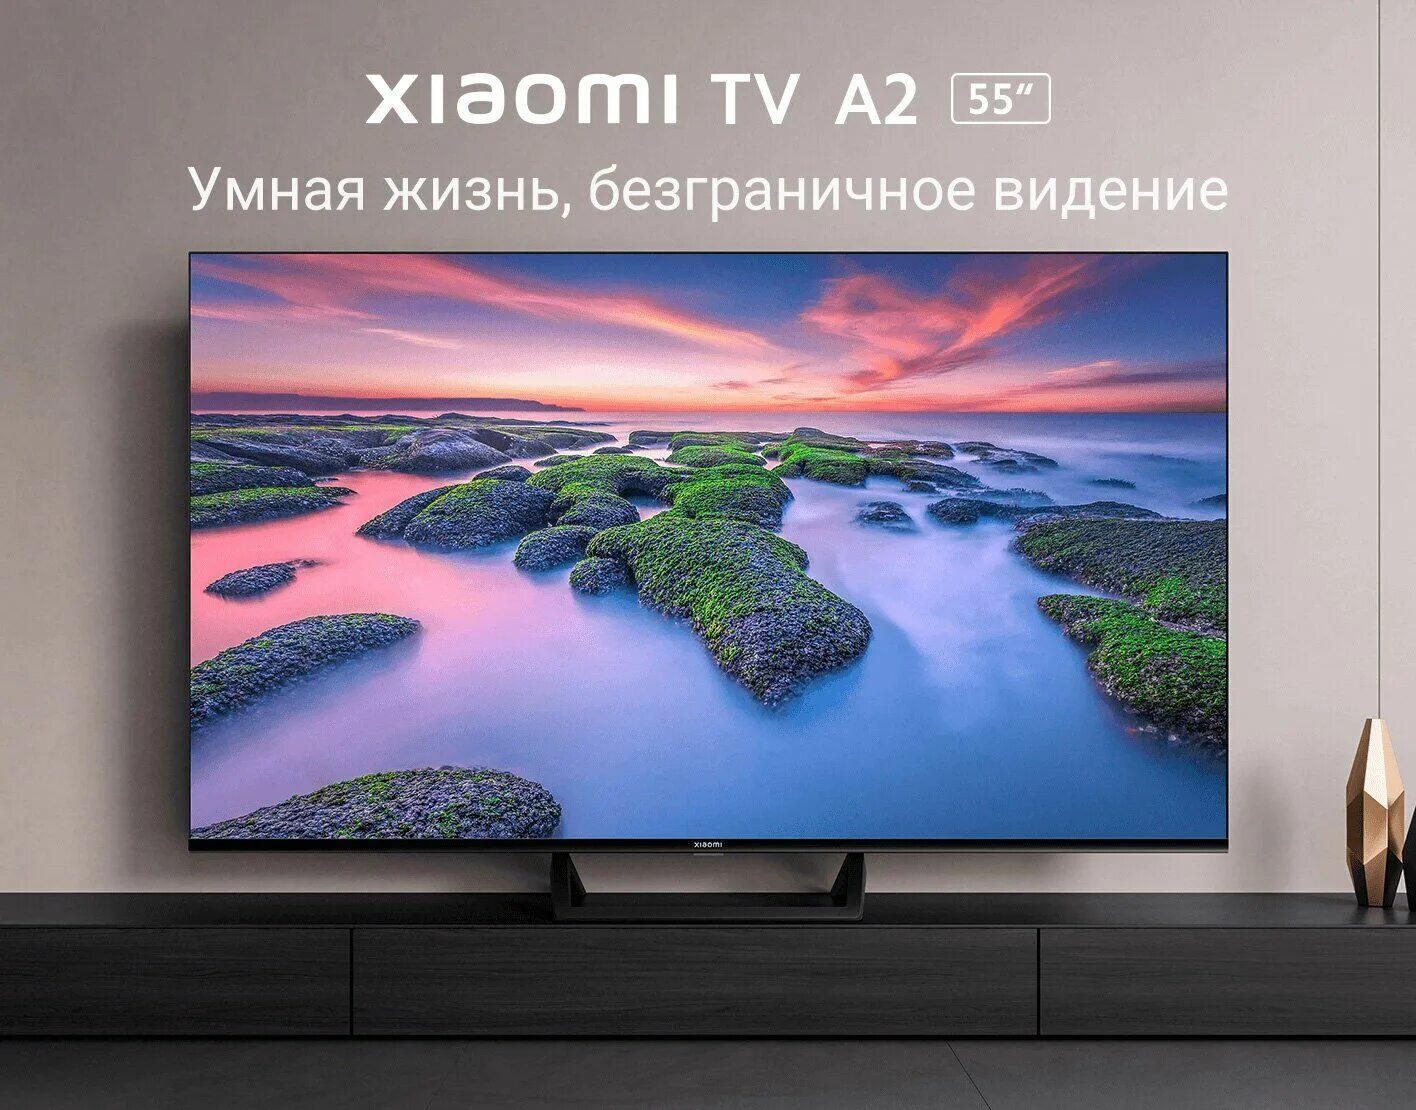 Телевизор xiaomi a2 32 l32m7 earu. Xiaomi a2 43 телевизор. Телевизор Xiaomi mi TV a2 50. Xiaomi TV a2 32 inch. Телевизор Xiaomi mi TV a2 32.